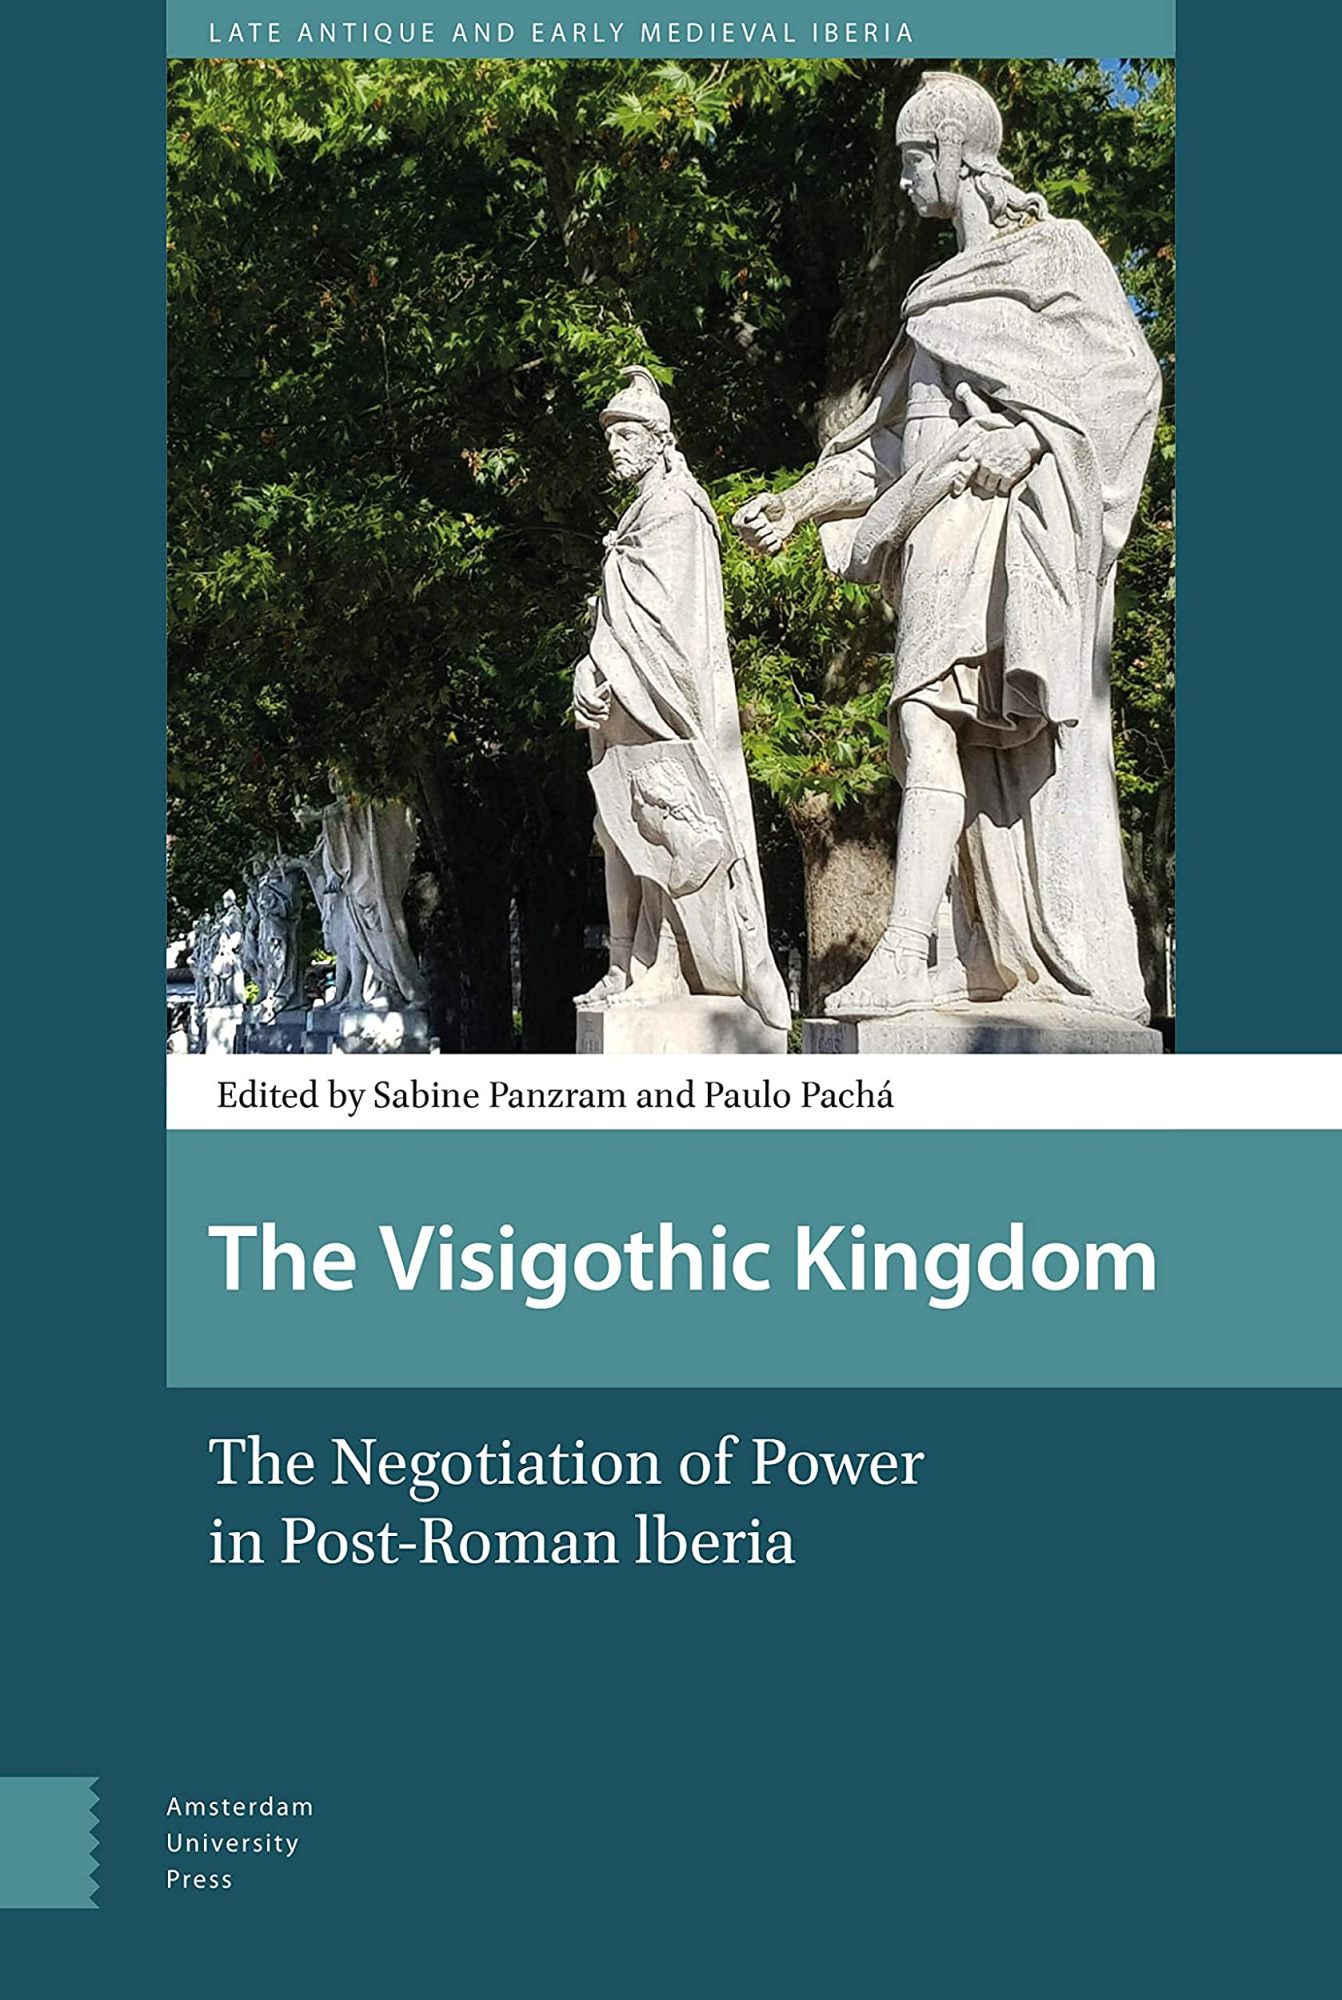 Libri Panzram, Martinez Jimene.. - Visigothic Kingdom: Negotiation Power Hb NUOVO SIGILLATO, EDIZIONE DEL 23/12/2020 SUBITO DISPONIBILE